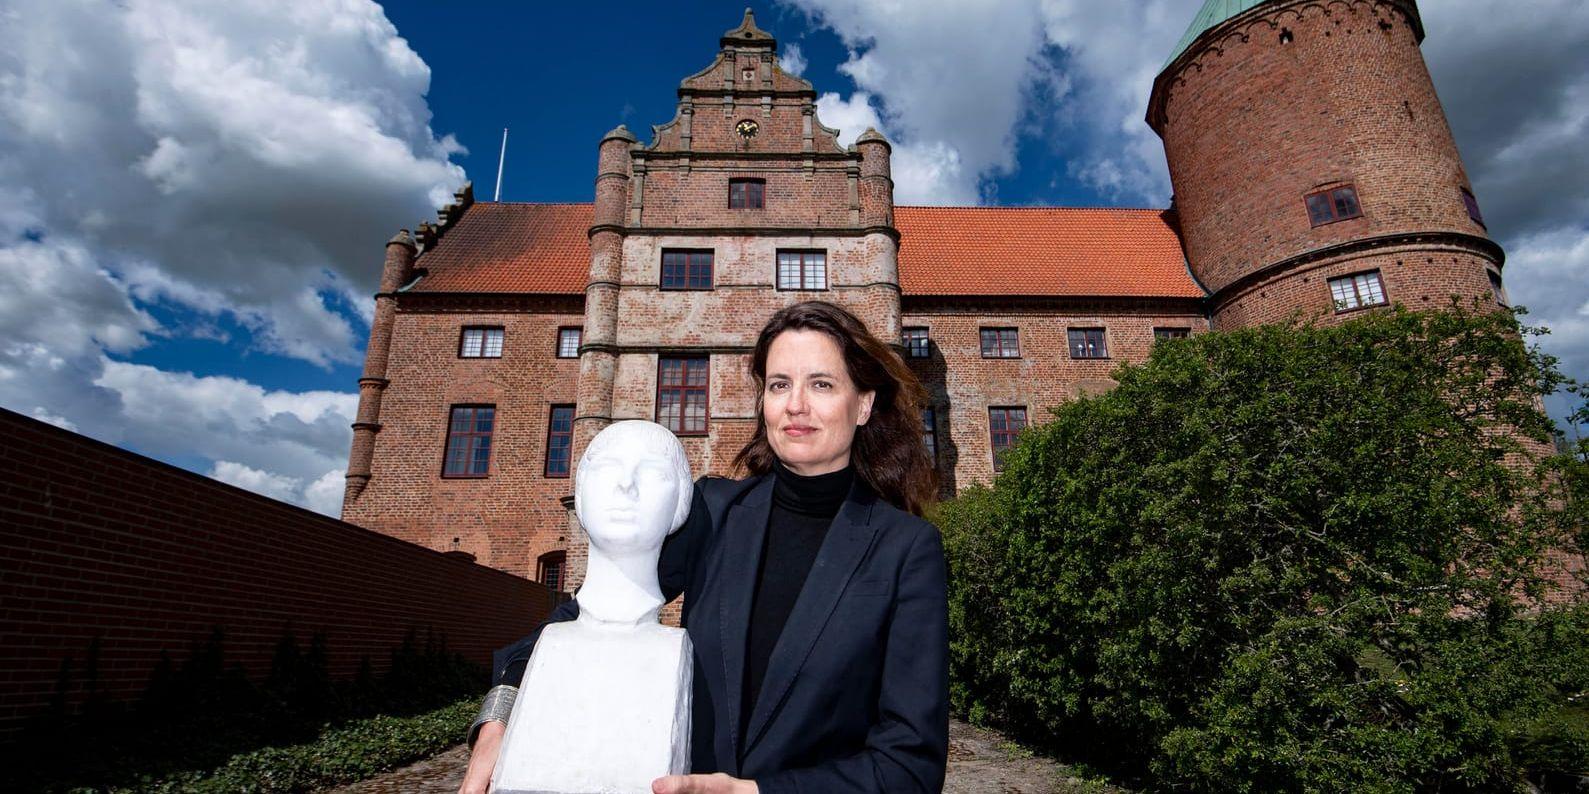 Utställningsproducent Alexandra von Schwerin med en byst av Ester Blenda Nordström. Den 24 maj öppnar utställningen om den banbrytande journalisten och författaren på Skarhults slott utanför Eslöv i Skåne.